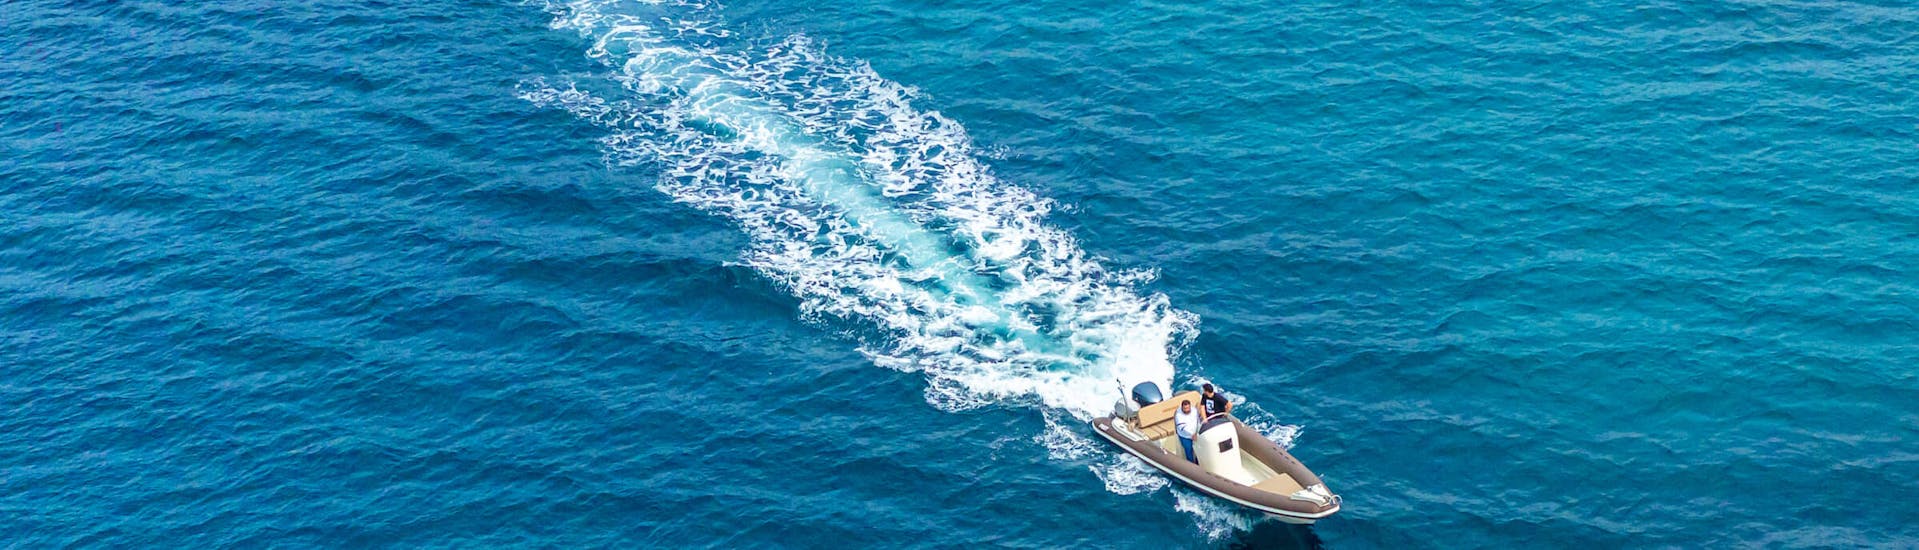 Una delle barche in mare aperto durante la Gita in barca privata di mezza giornata alle spiagge di Milos con Venus of Milos.